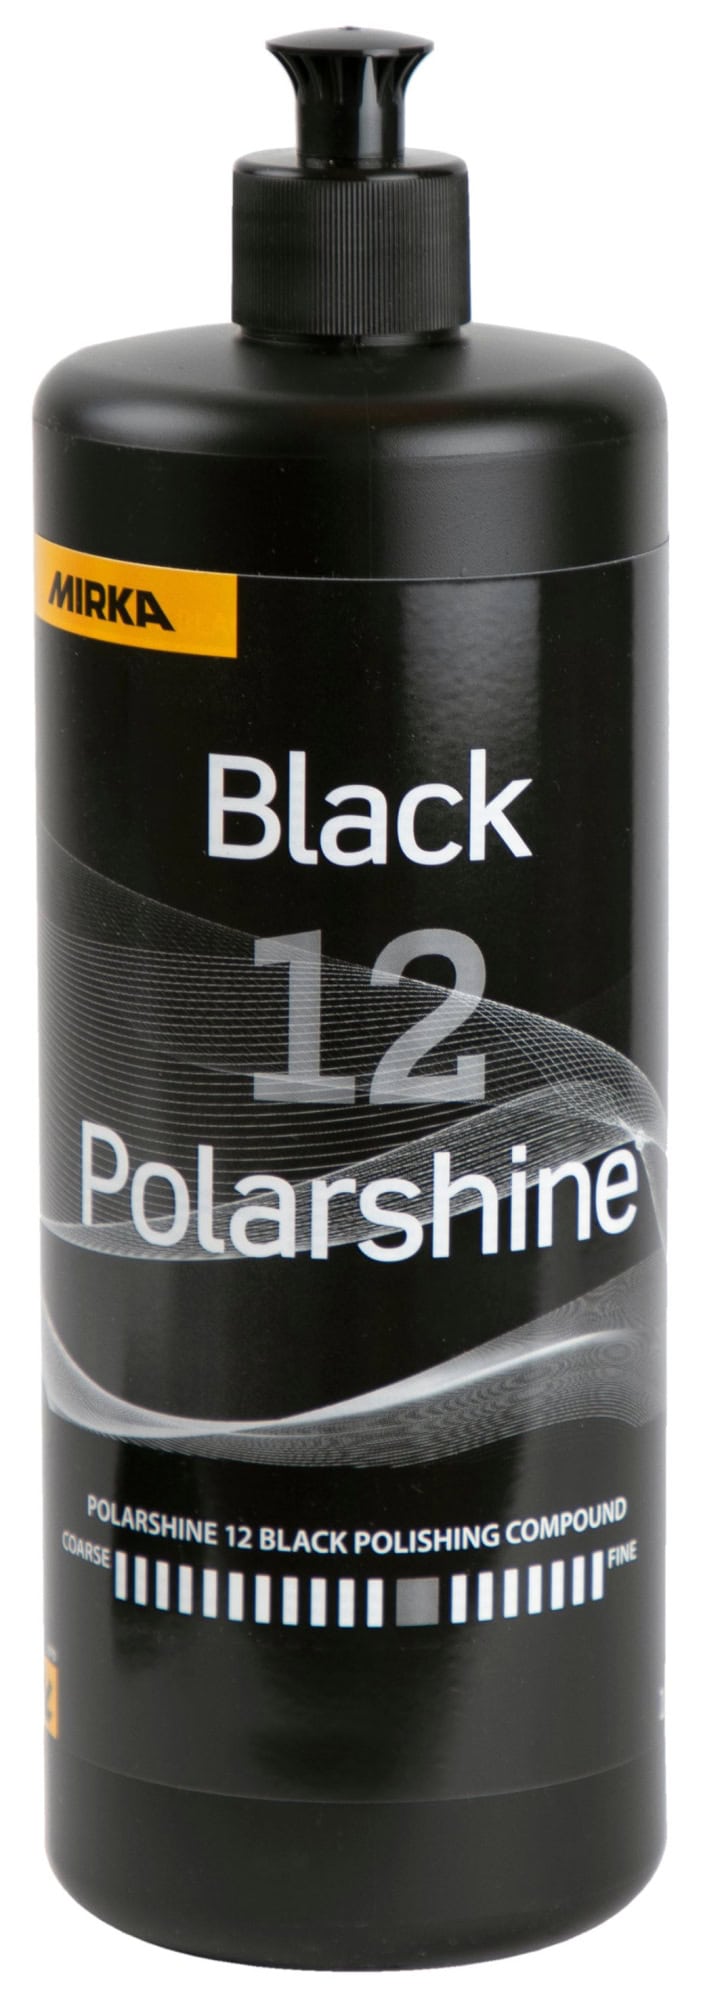 Mirka® Polarshine 12 Black 7991210111B, 1 Liter, Mittelgrobe Politur für Kratzer speziell auf dunklen Oberflächen